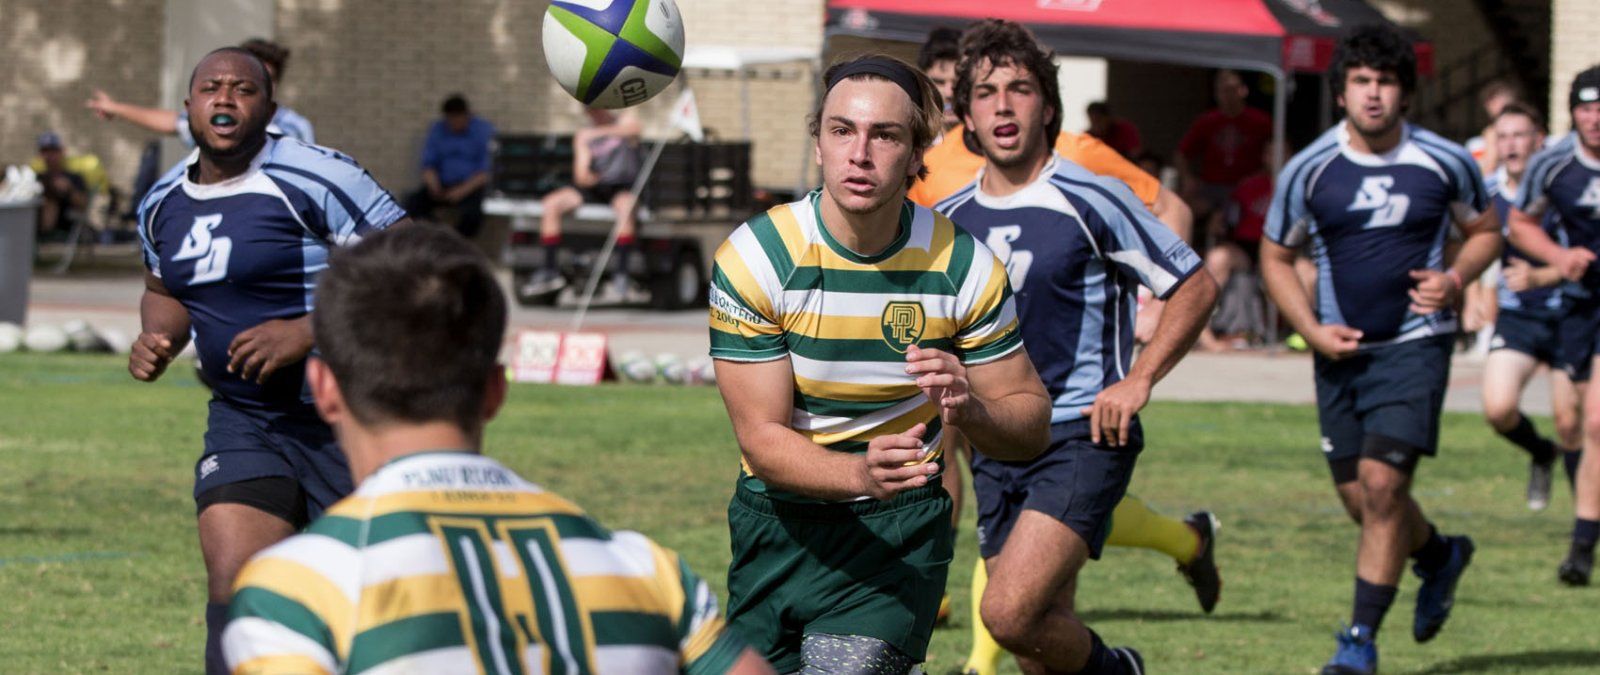 鶹's rugby team competes against the University of San Diego in a local tournament.